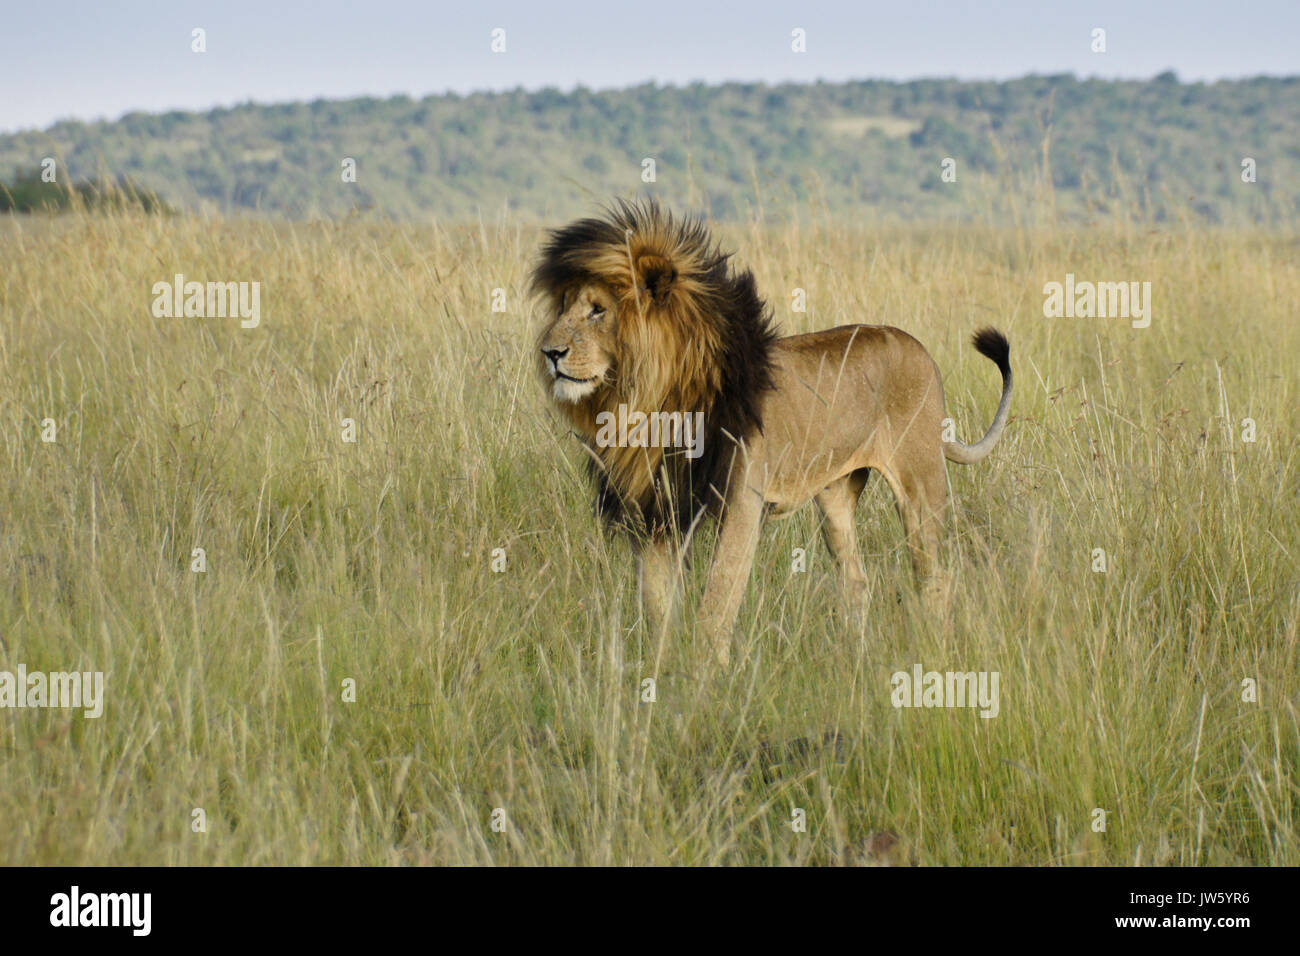 Lion à crinière noire (appelée cicatrice ou Scarface) debout dans l'herbe haute, Masai Mara, Kenya Banque D'Images